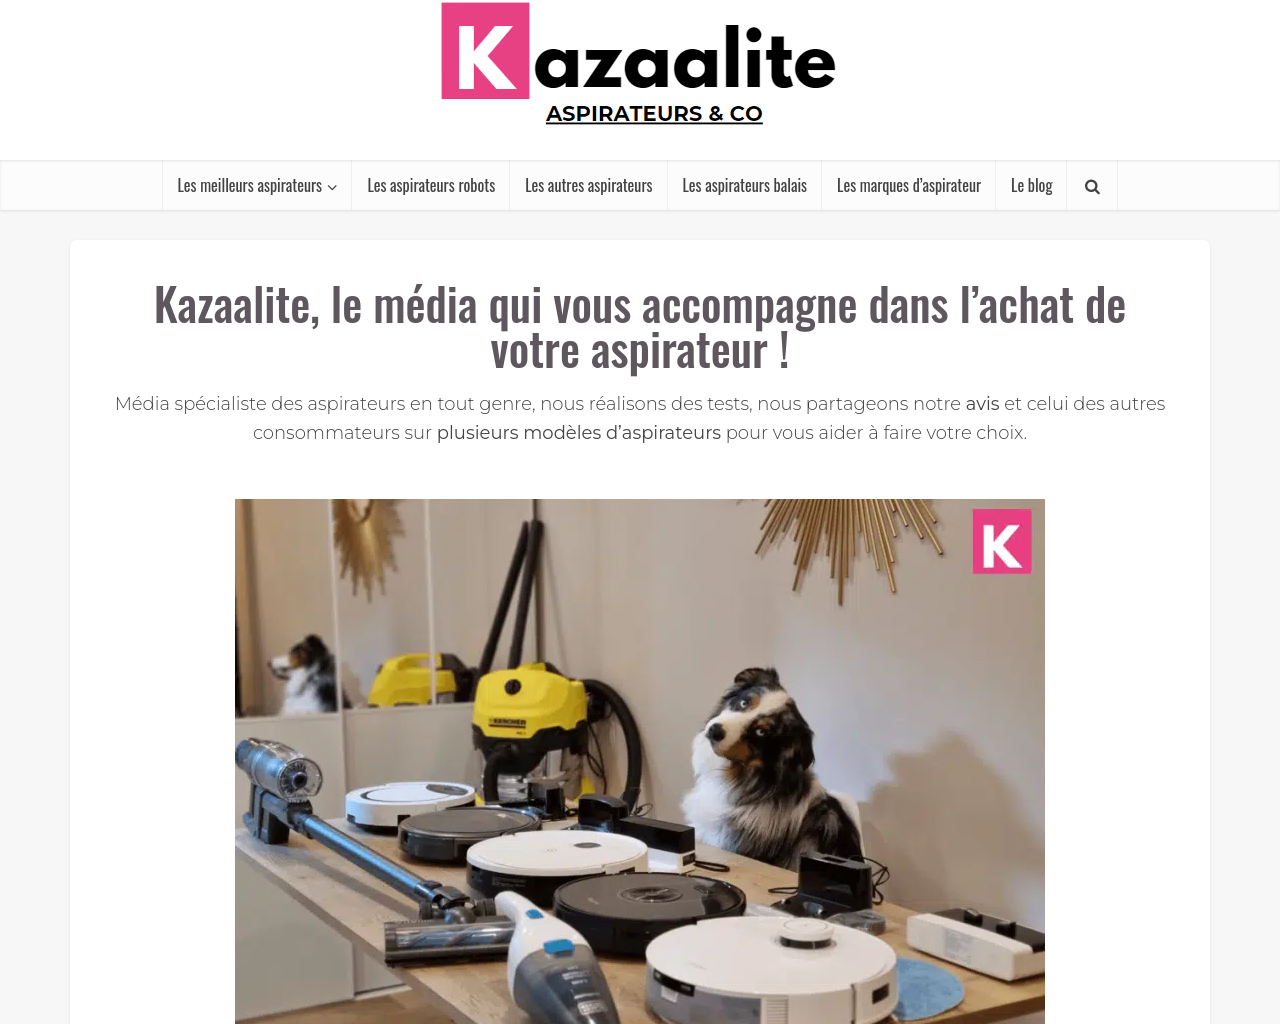 kazaalite.com